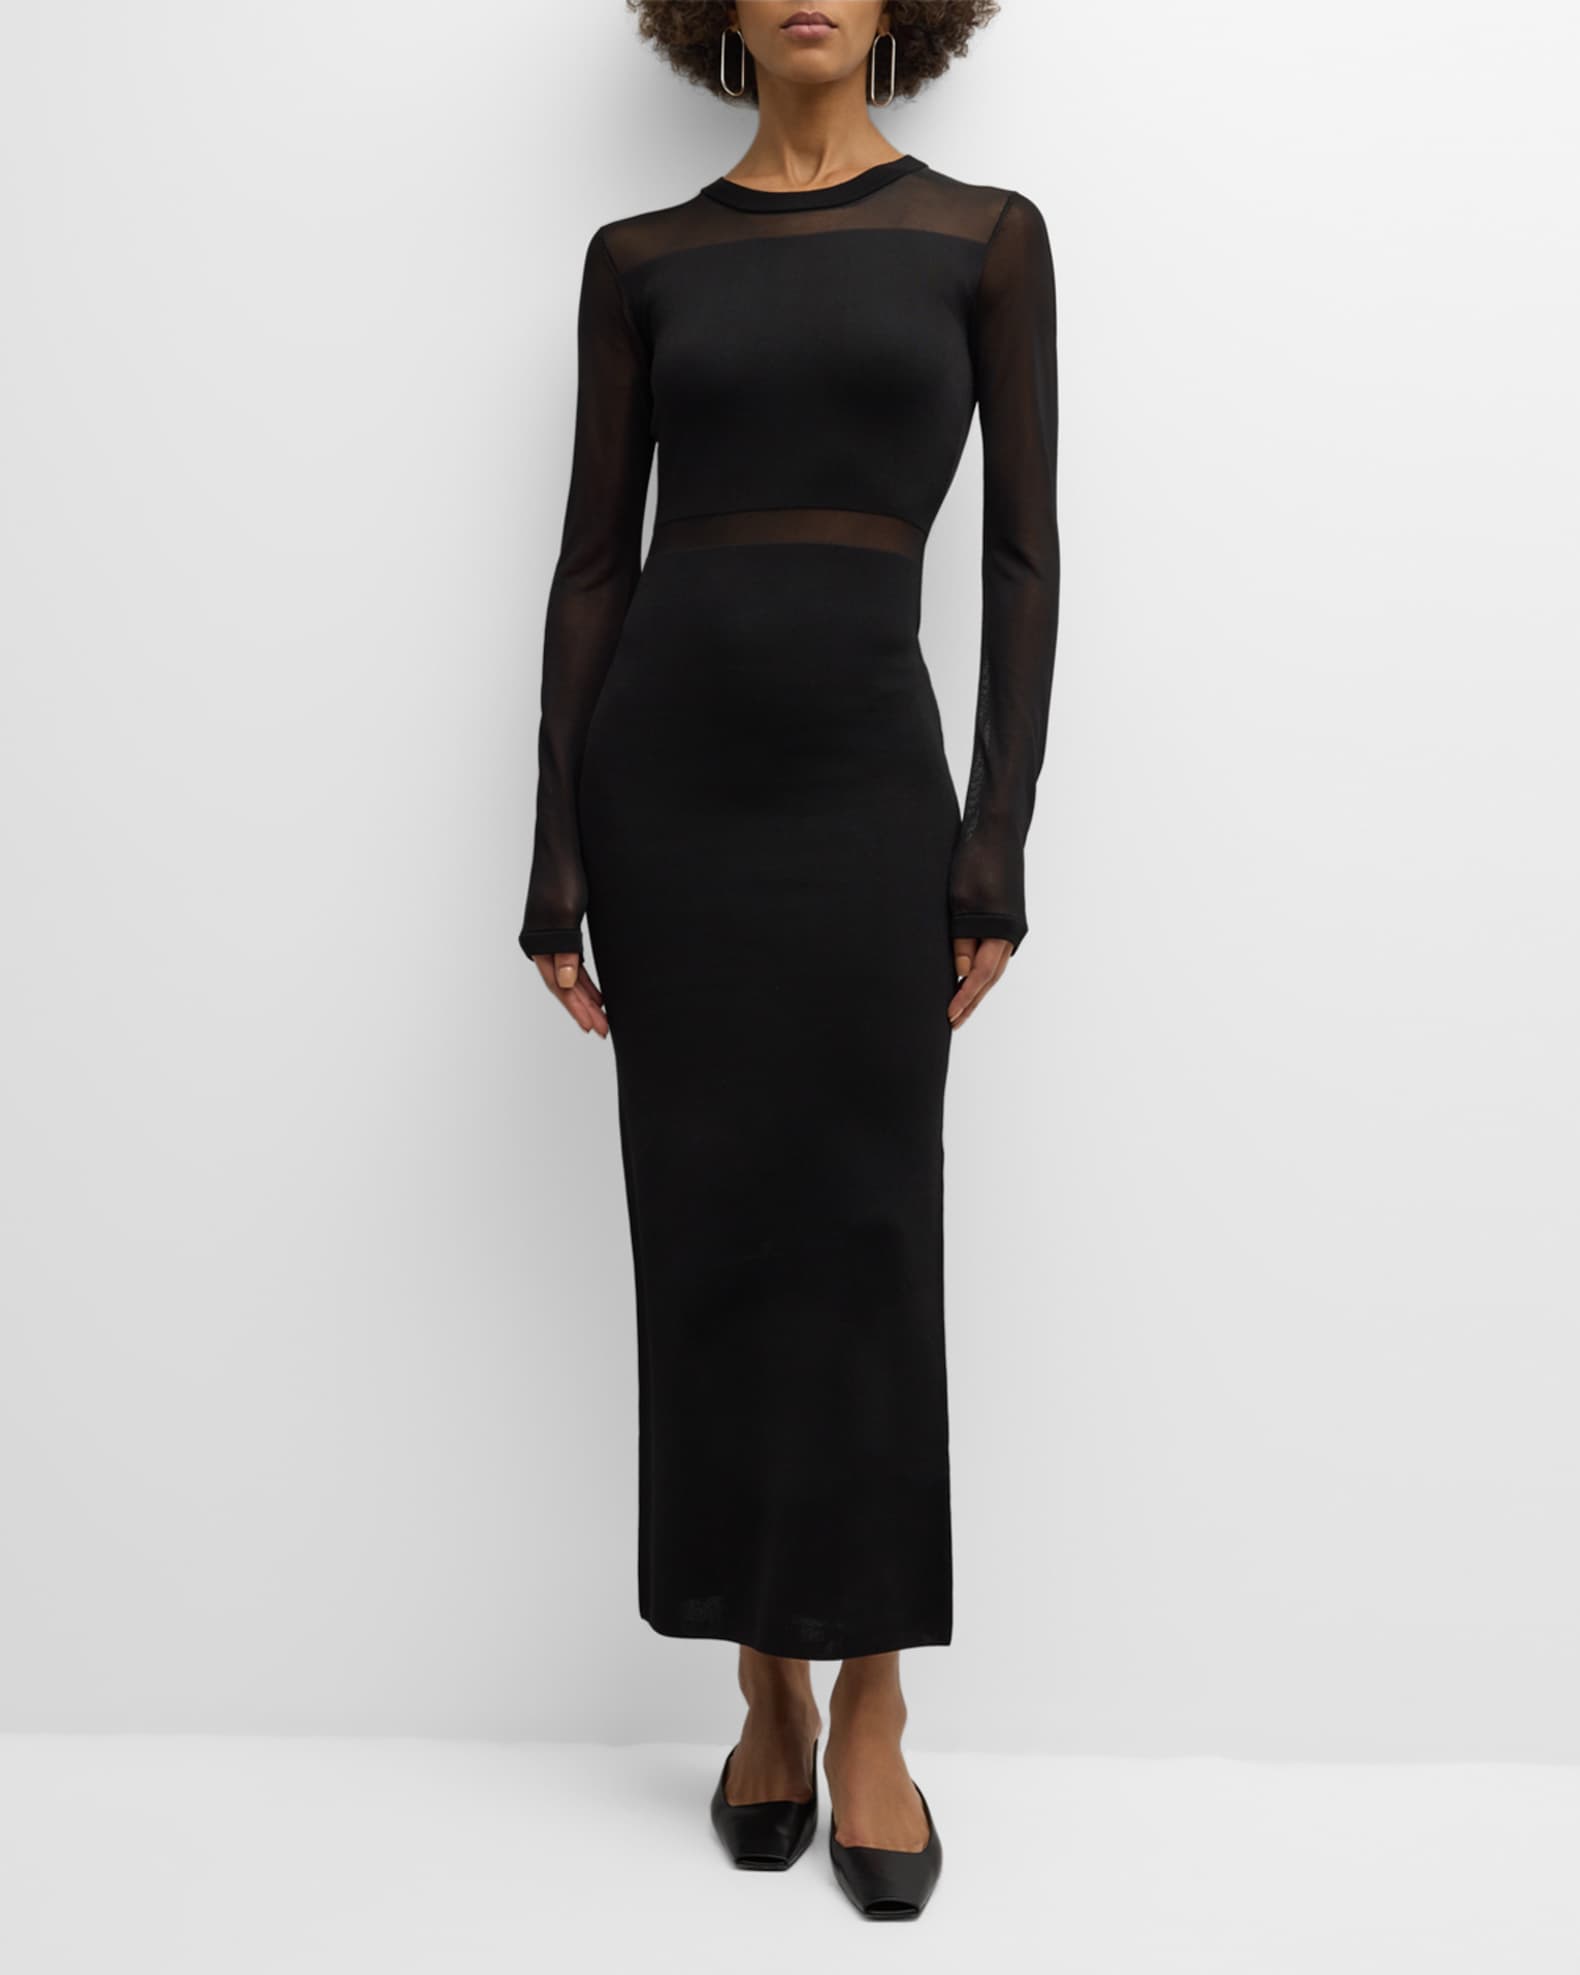 Toteme Semi Sheer Knit Cutout Long-Sleeve Maxi Dress | Neiman Marcus